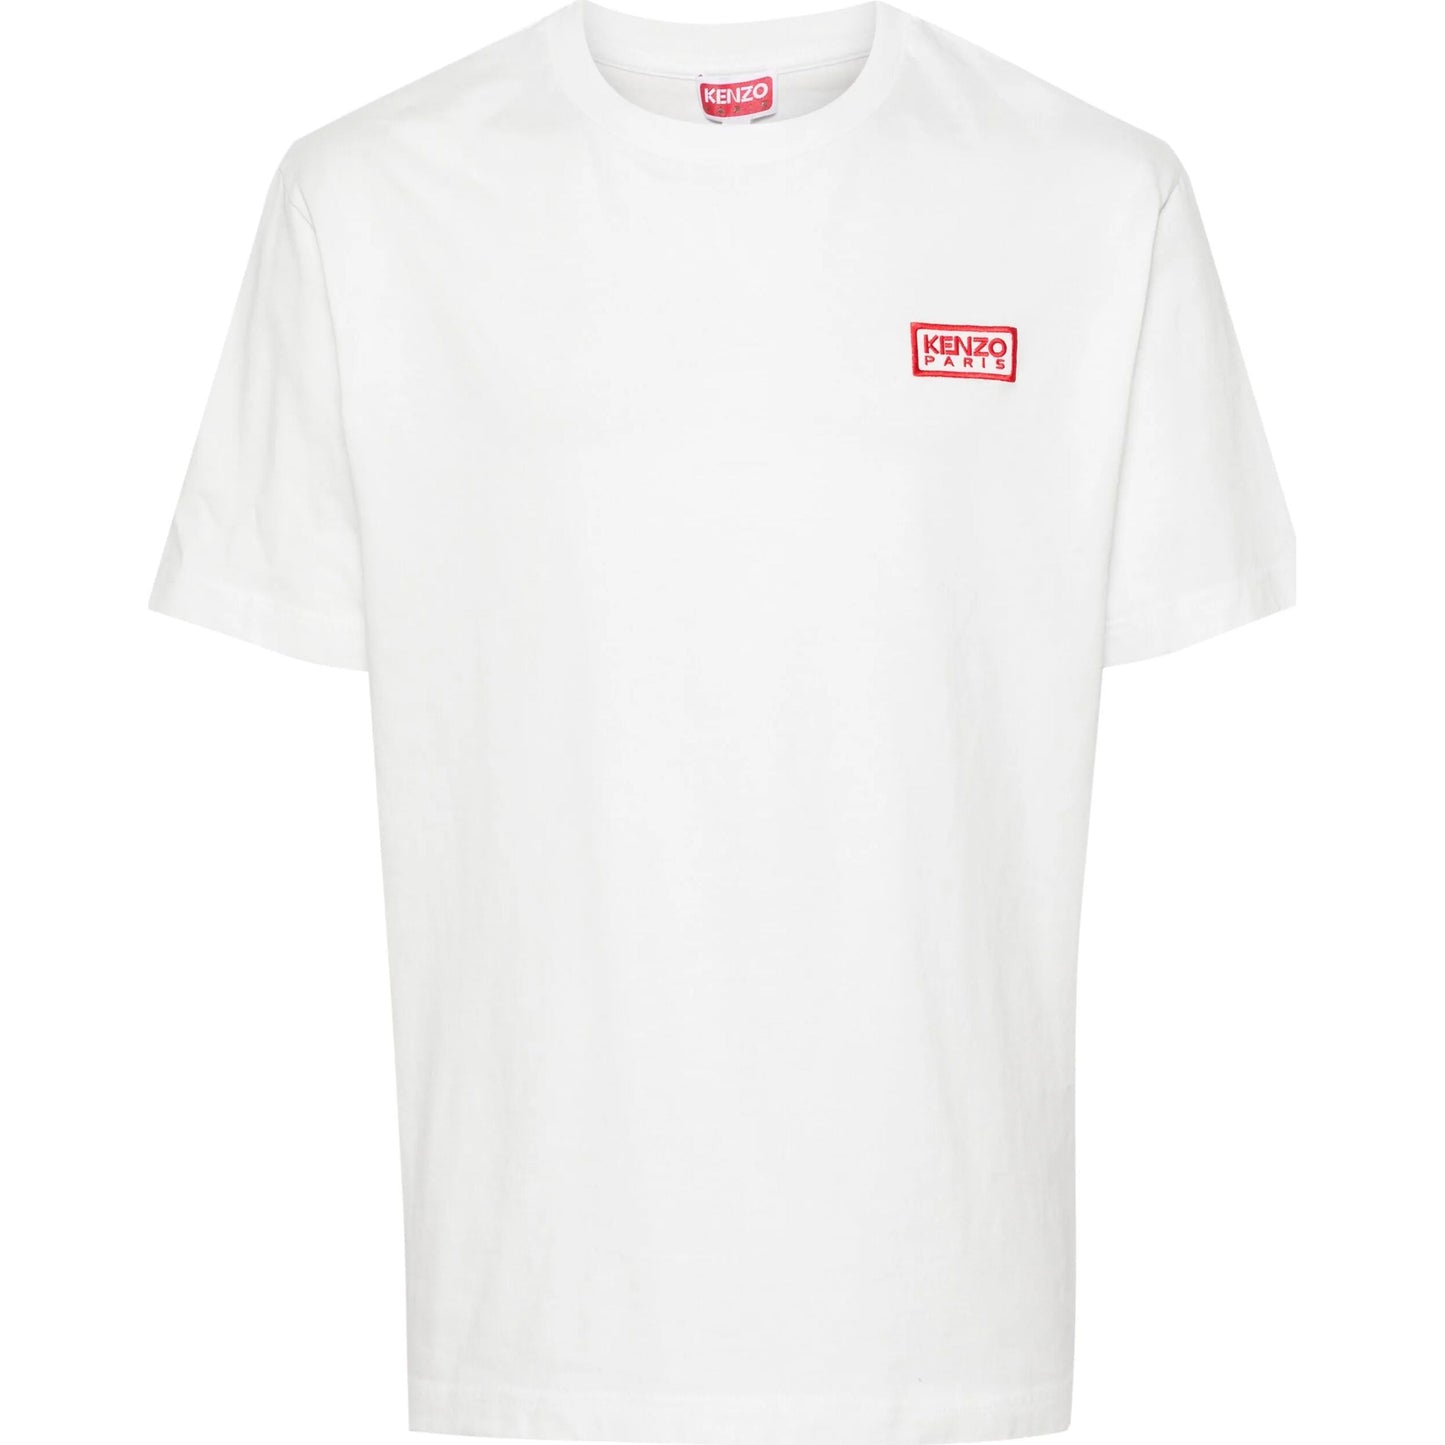 KENZO marškinėliai trumpomis rankovėmis vyrams, Balta, Bicolor kp classic t-shirt